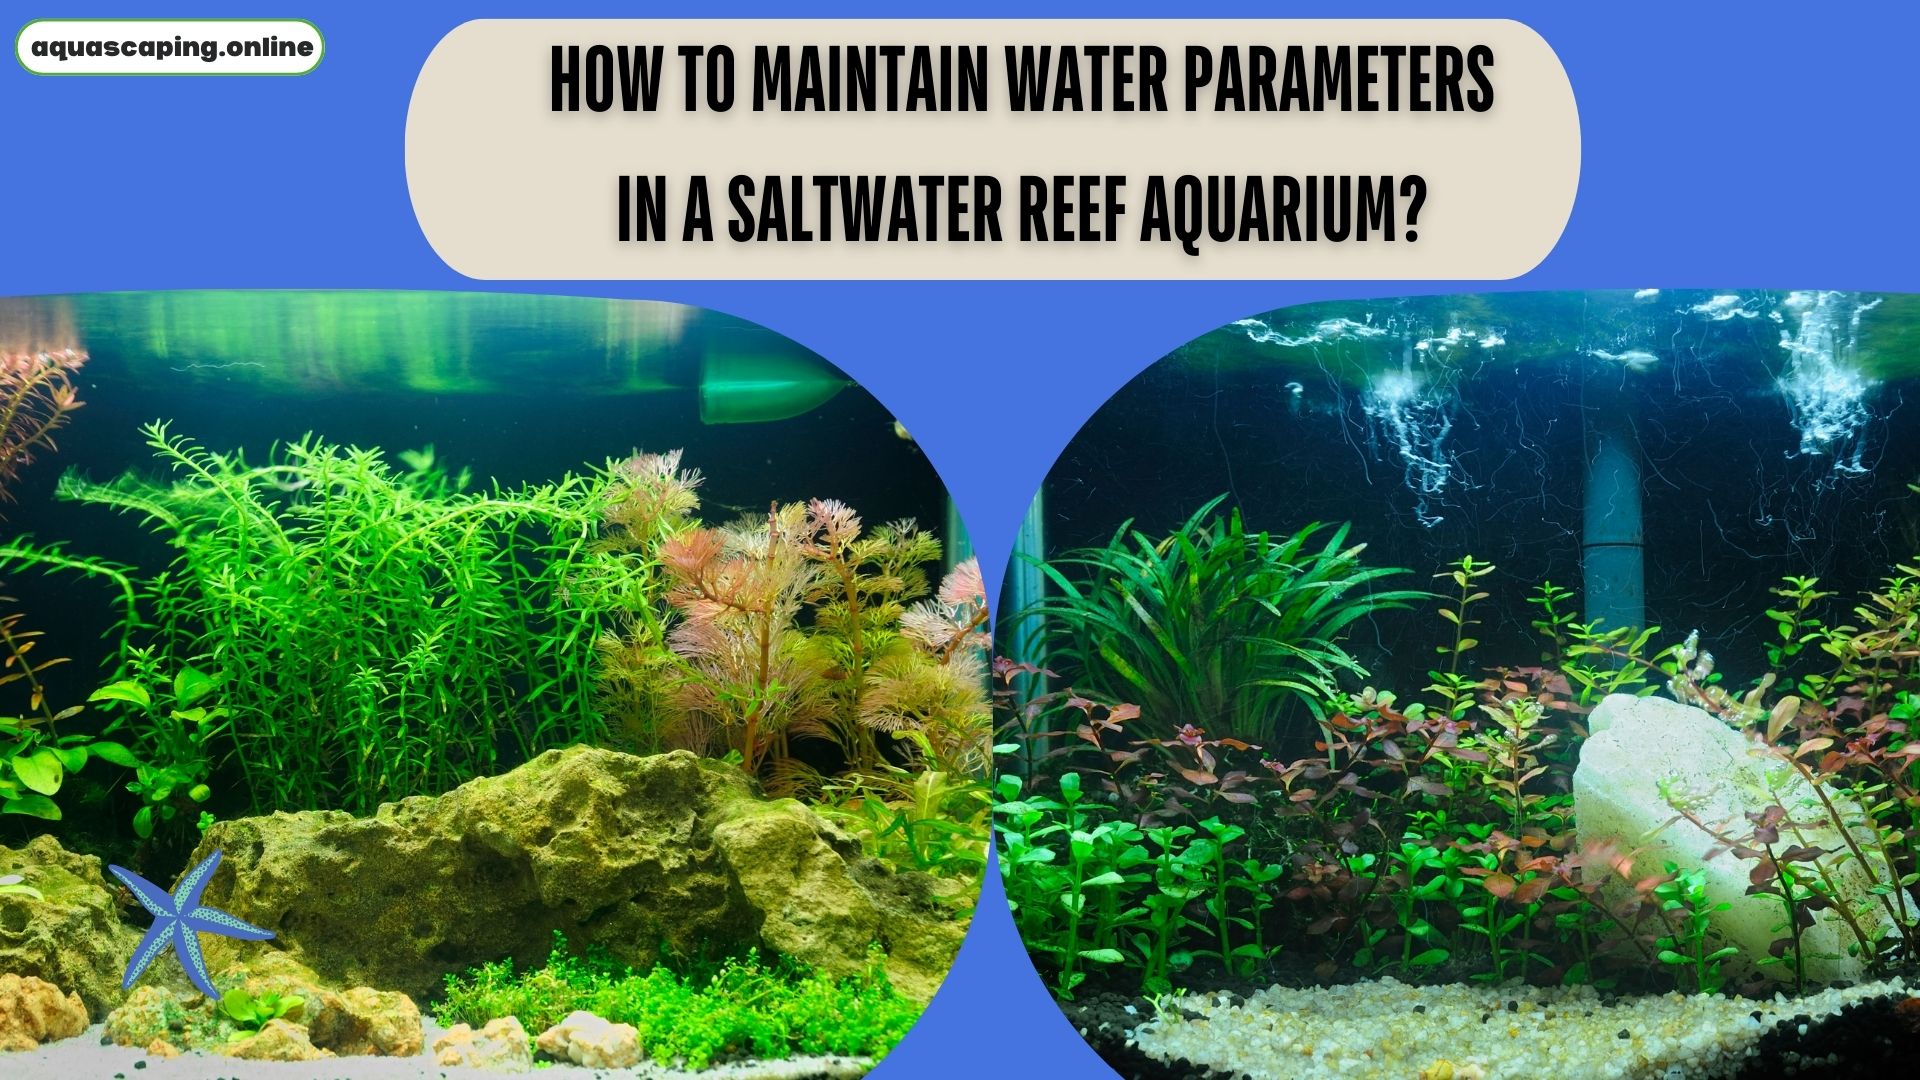 Water parameters in a saltwater reef aquarium